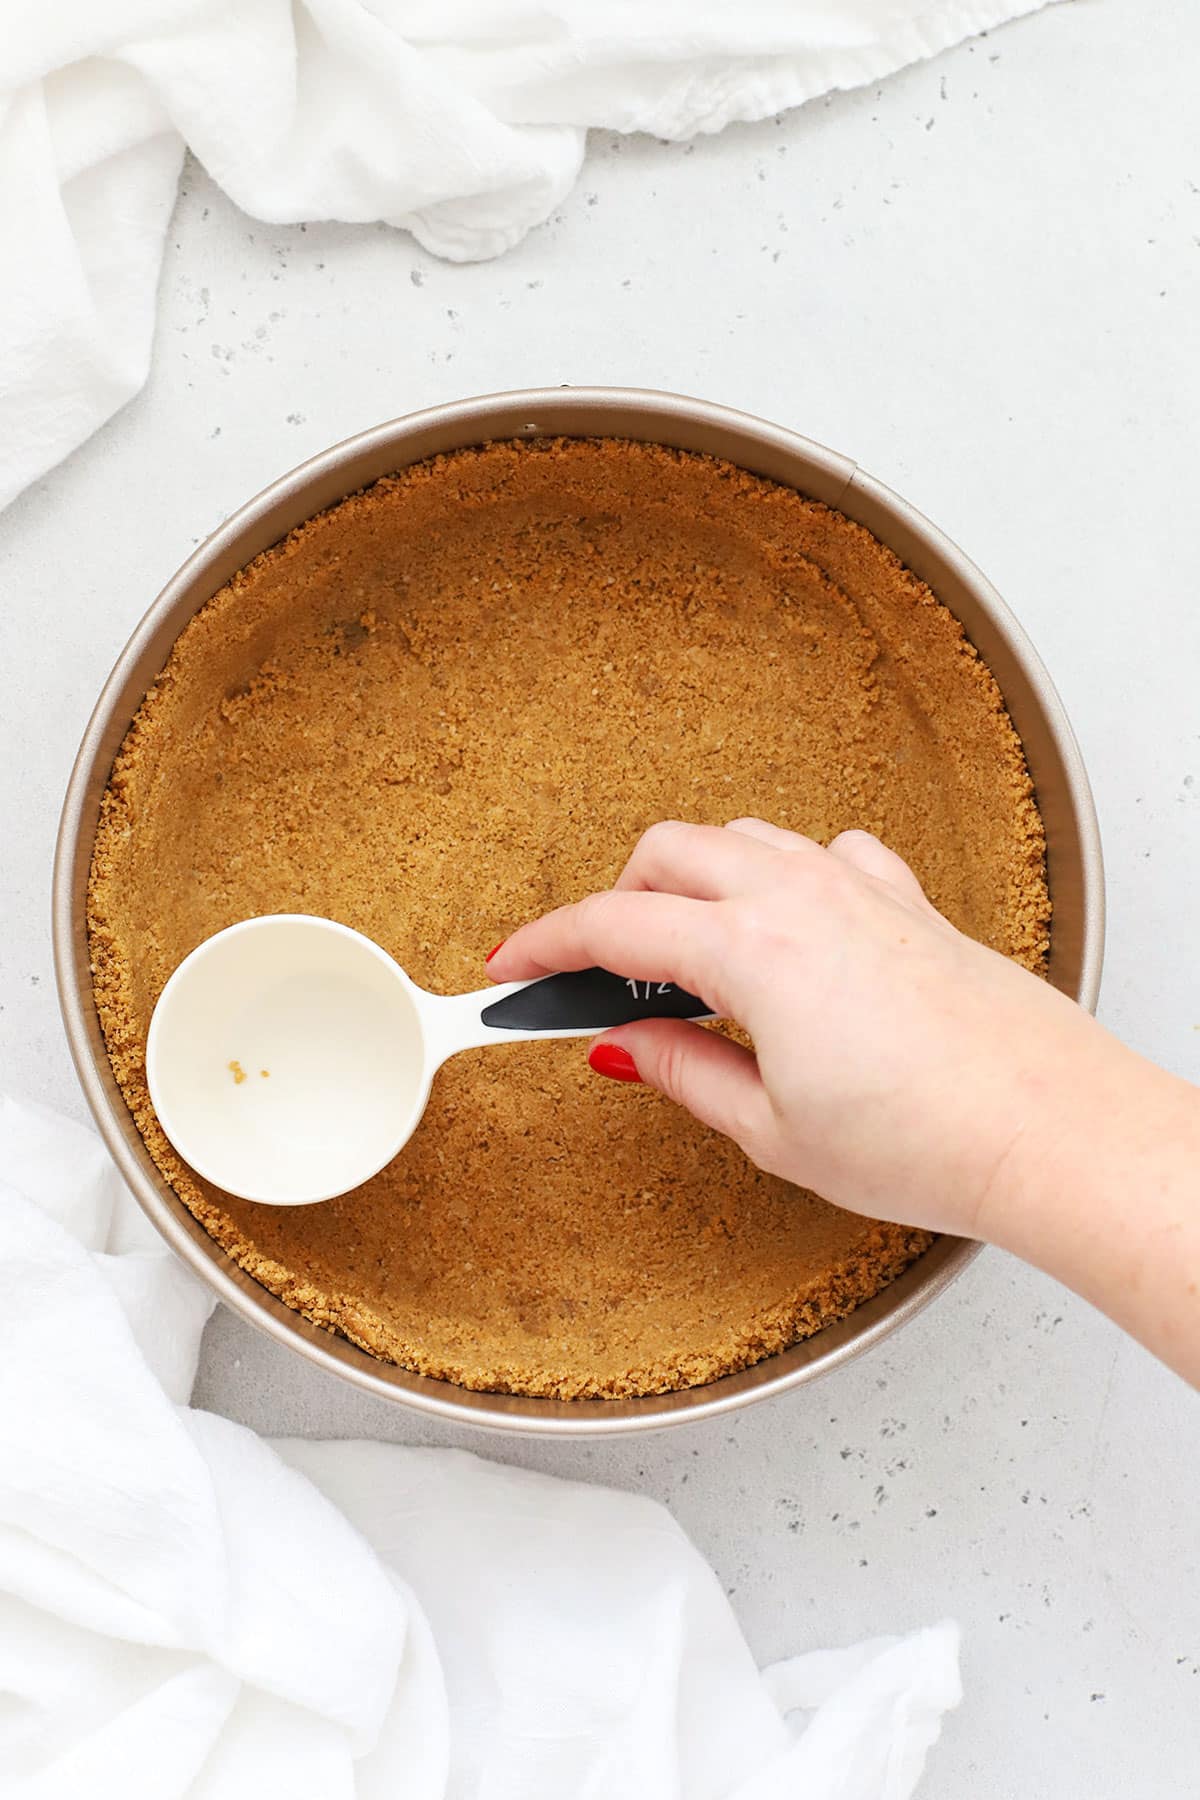 making gluten-free graham cracker crust for cheesecake